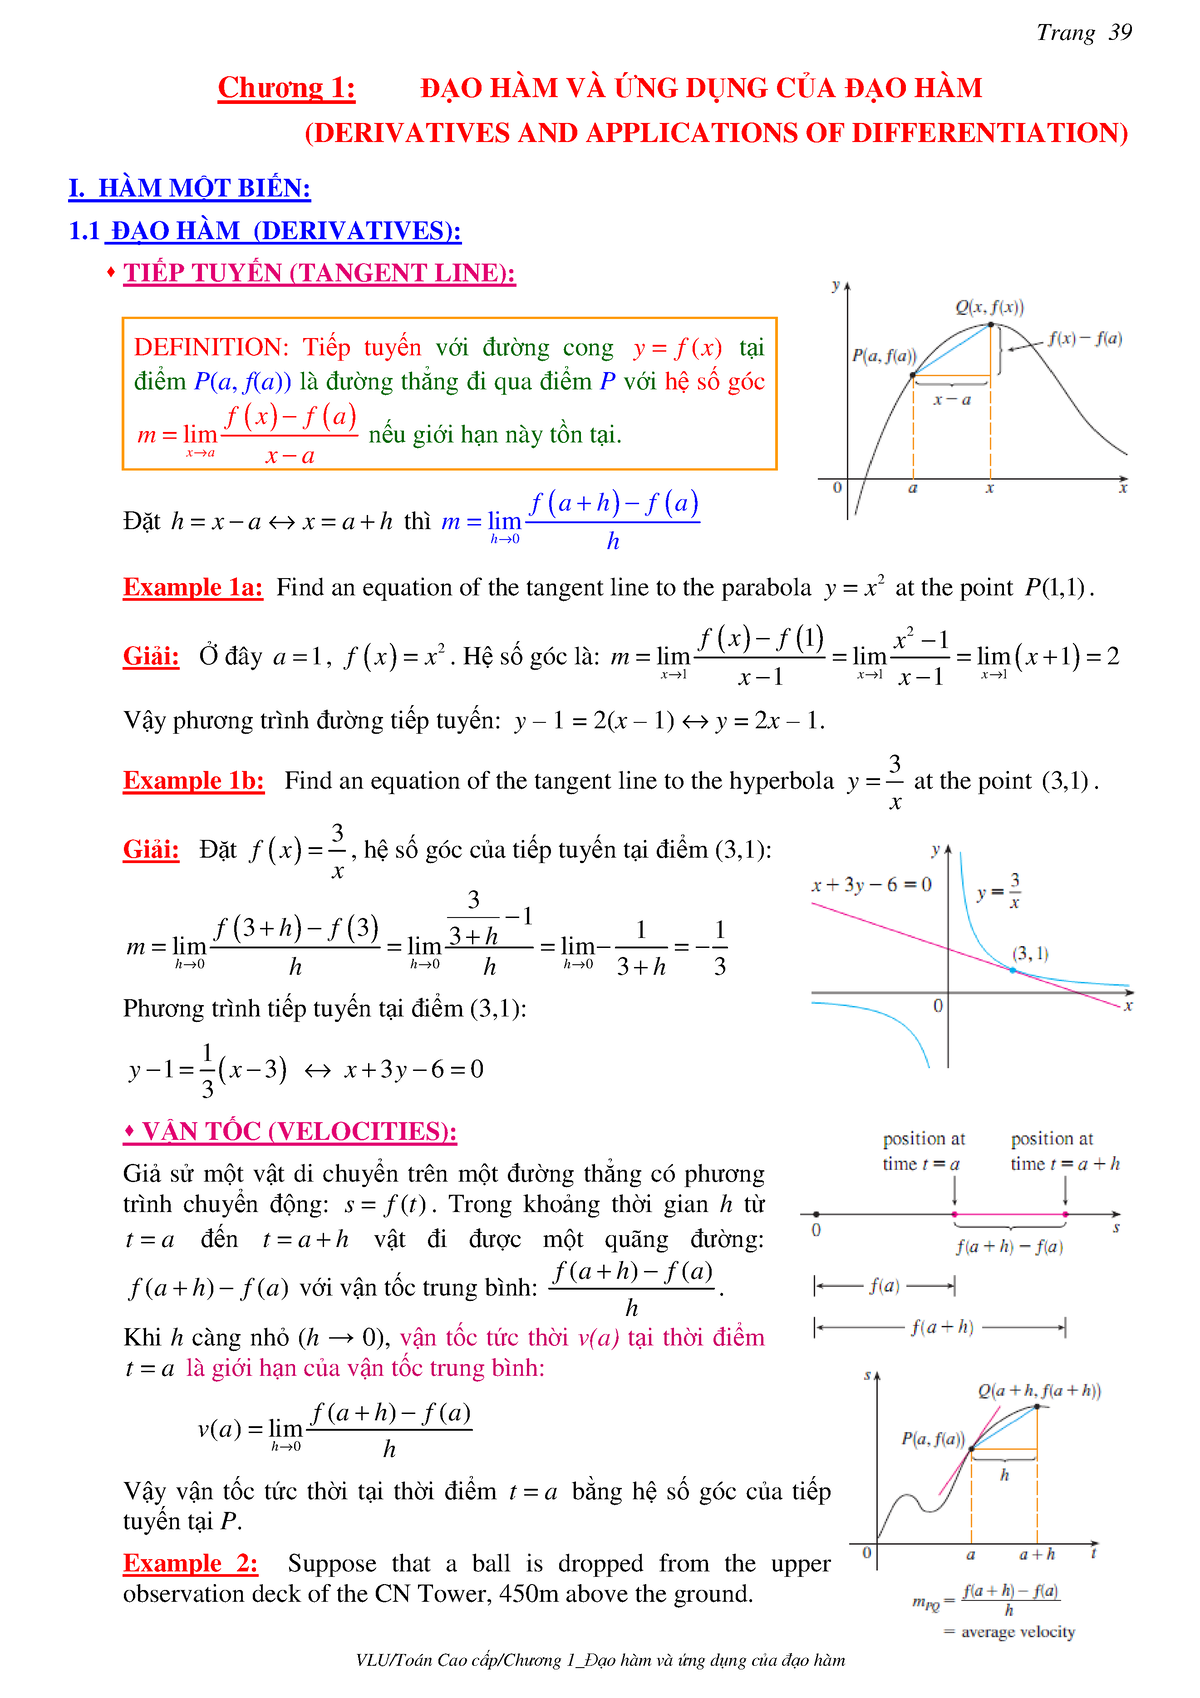 Các công thức tan cos sin rule cho các bài toán phức tạp